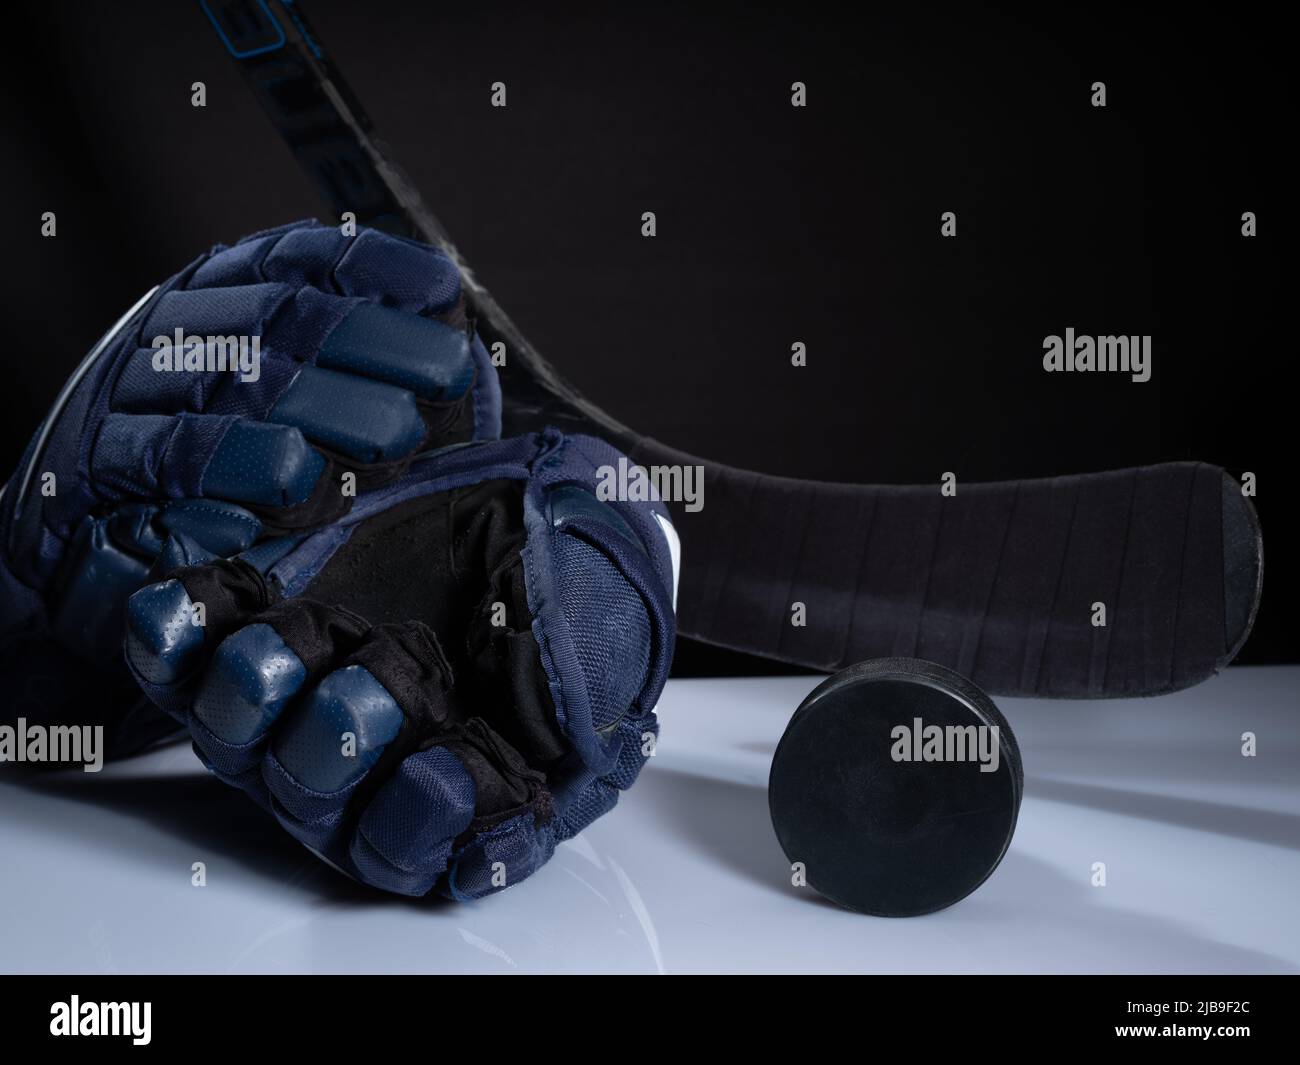 Helsinki / Finlande - 4 JUIN 2022 : gros plan de l'équipement de hockey sur glace sur fond sombre. Casque, bâton, palet et gants de hockey sur glace Banque D'Images